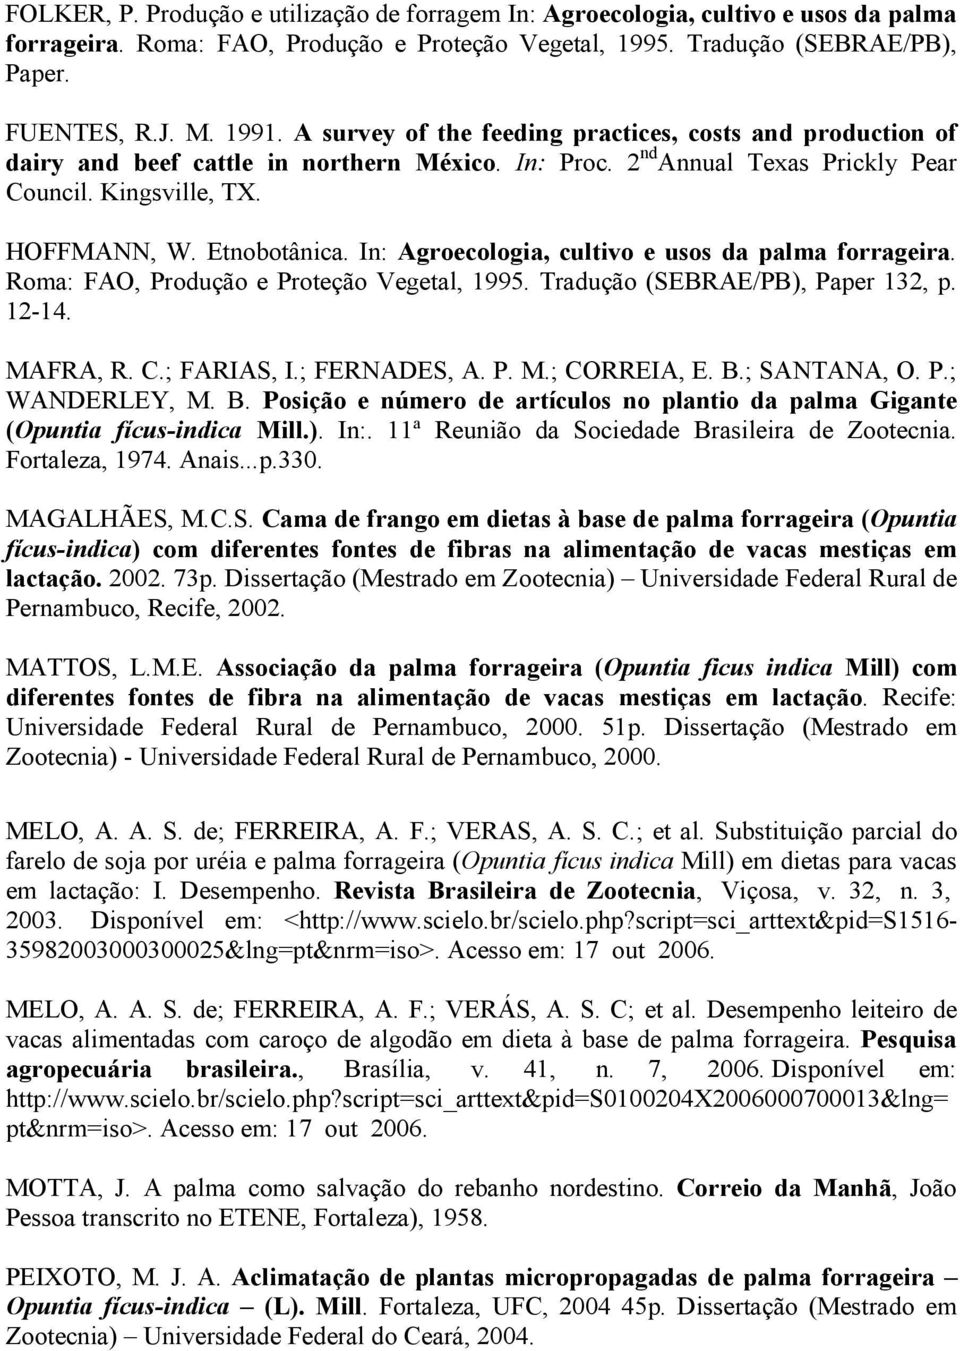 In: Agroecologia, cultivo e usos da palma forrageira. Roma: FAO, Produção e Proteção Vegetal, 1995. Tradução (SEBRAE/PB), Paper 132, p. 12-14. MAFRA, R. C.; FARIAS, I.; FERNADES, A. P. M.; CORREIA, E.